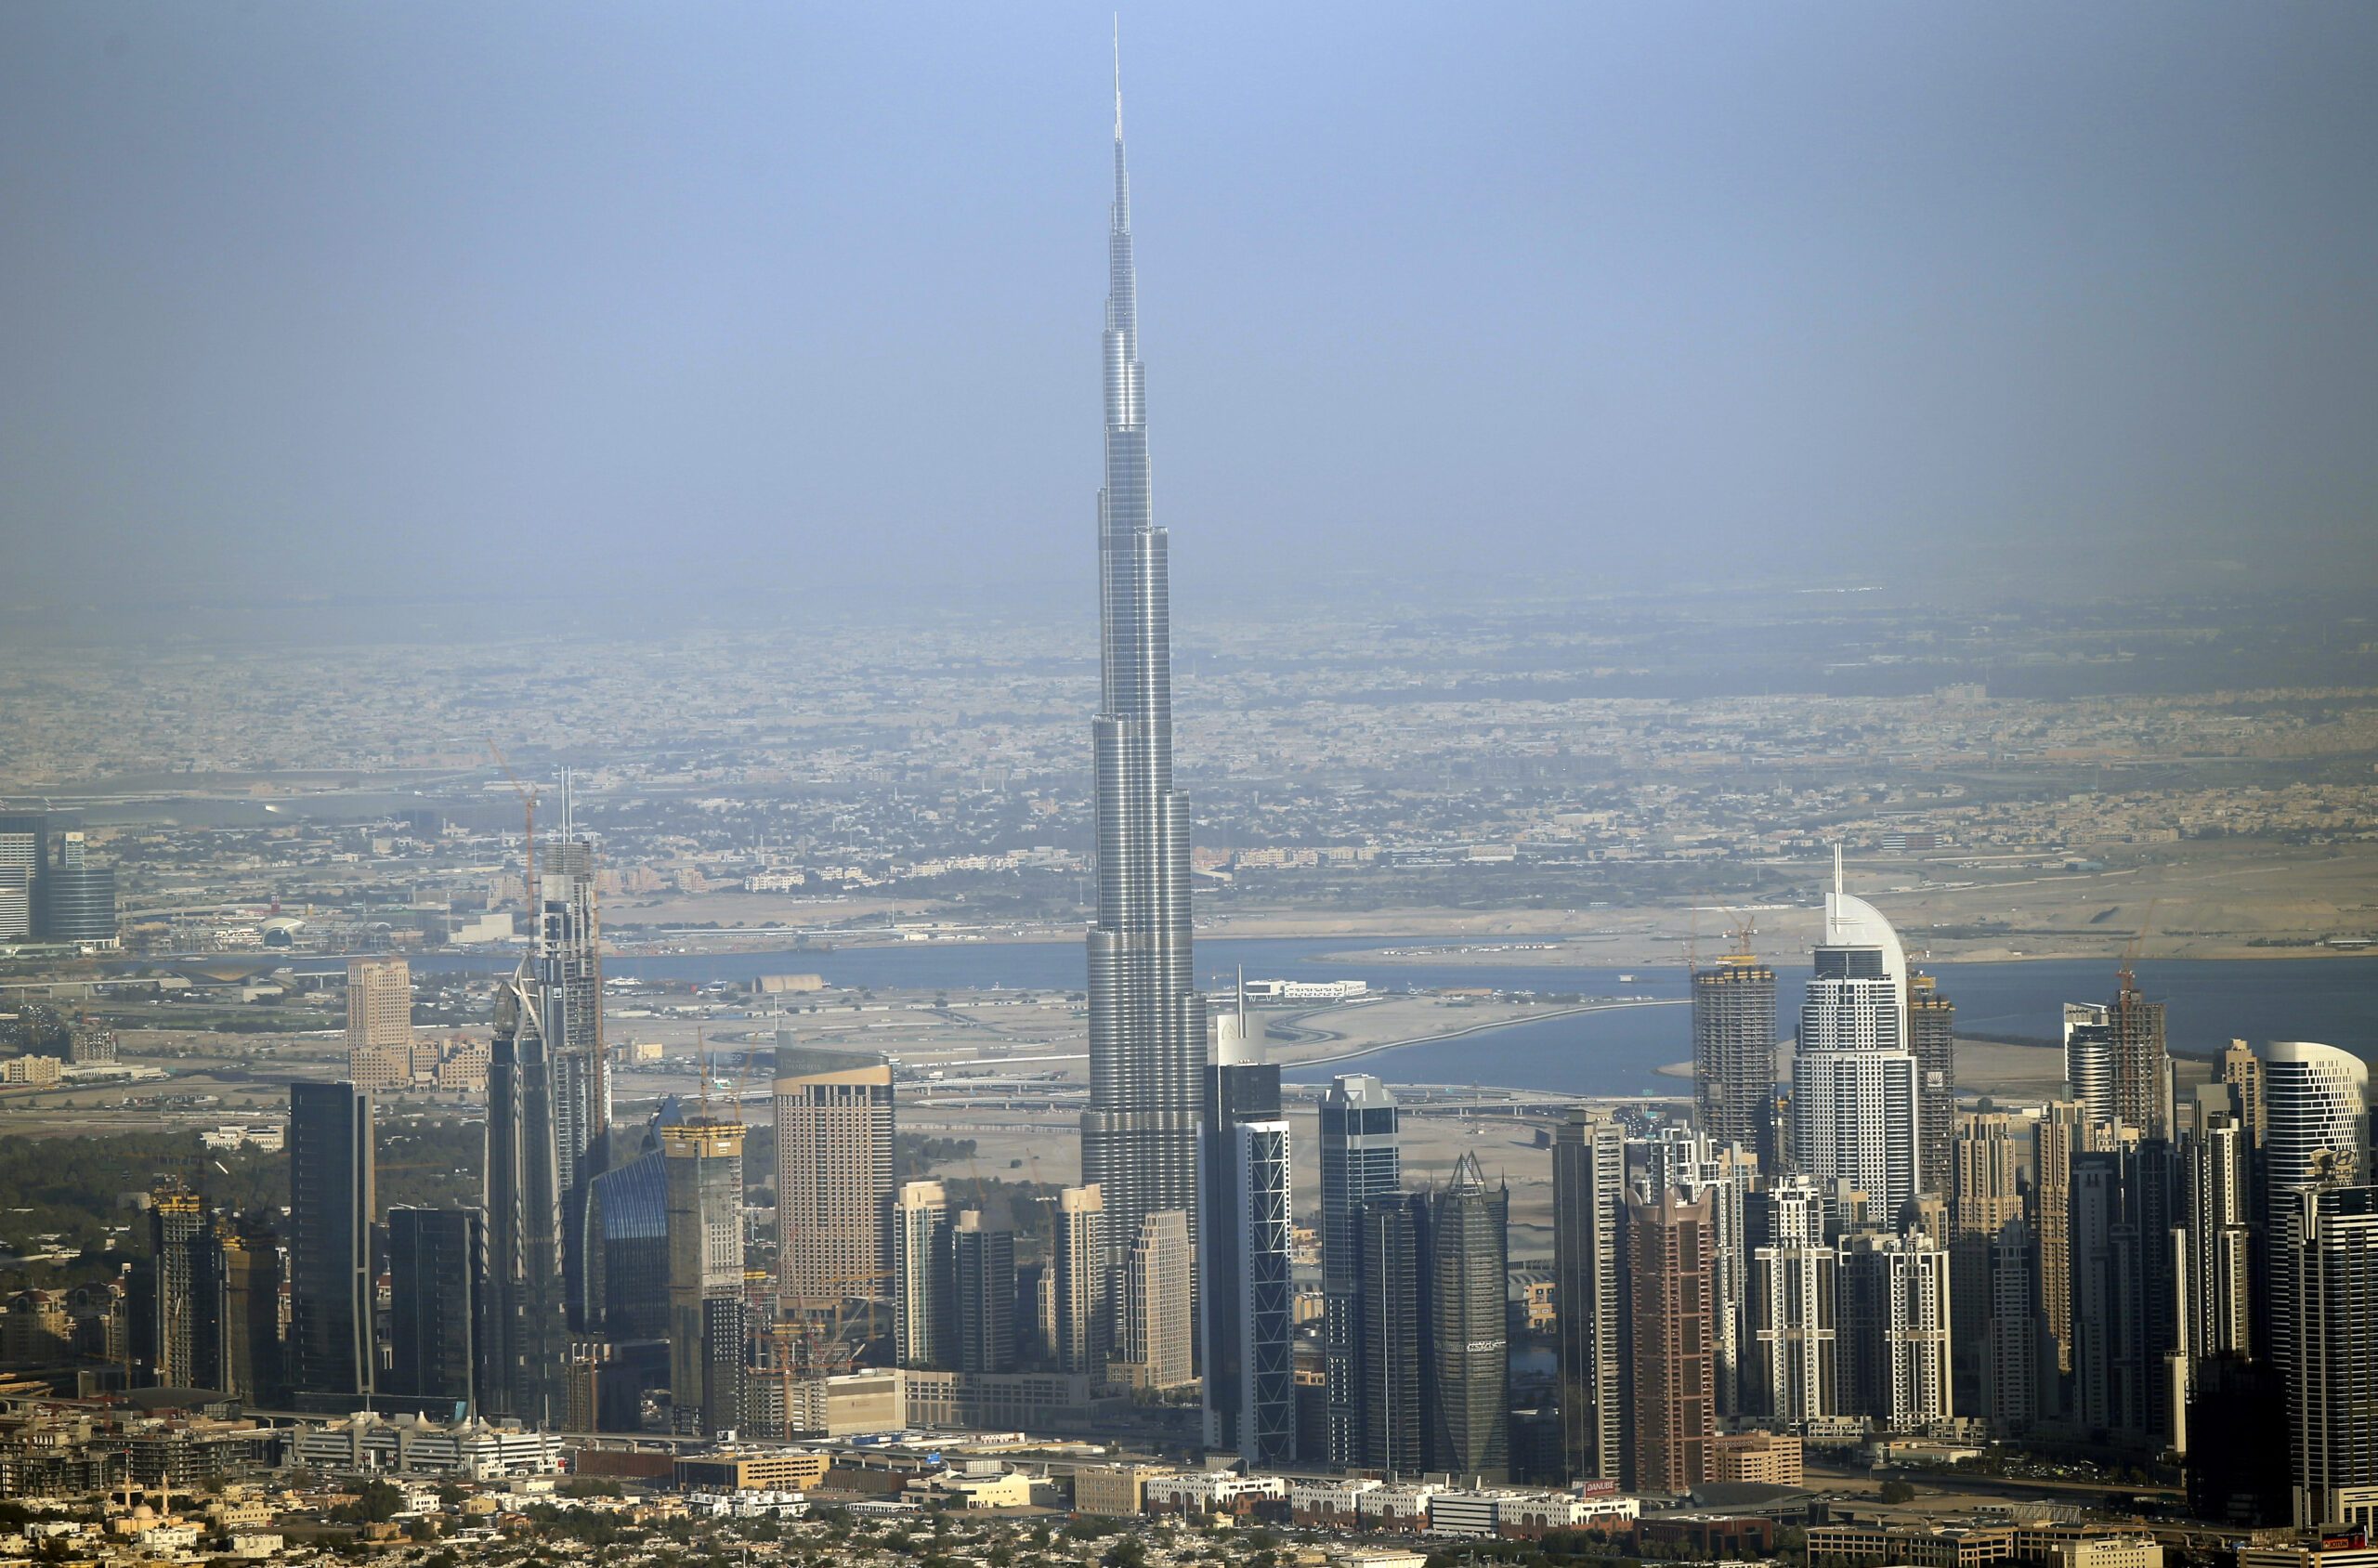 Dubai to build tower taller than Burj Khalifa